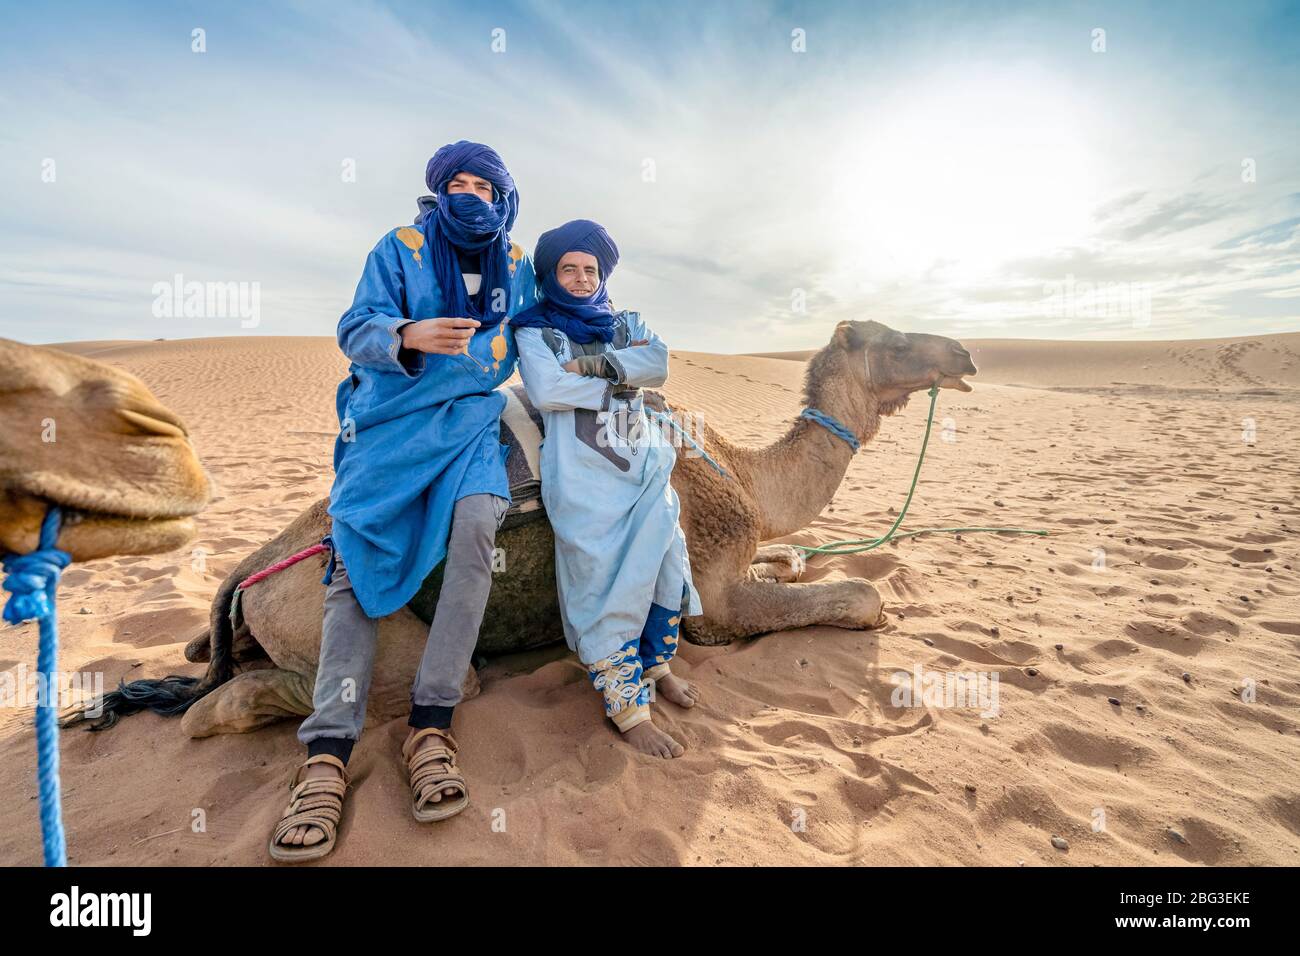 Mhamid, Maroc - 16 mars 2020: Les Bédouins se reposent sur le chameau sur les dunes du désert du Sahara, Afrique Banque D'Images